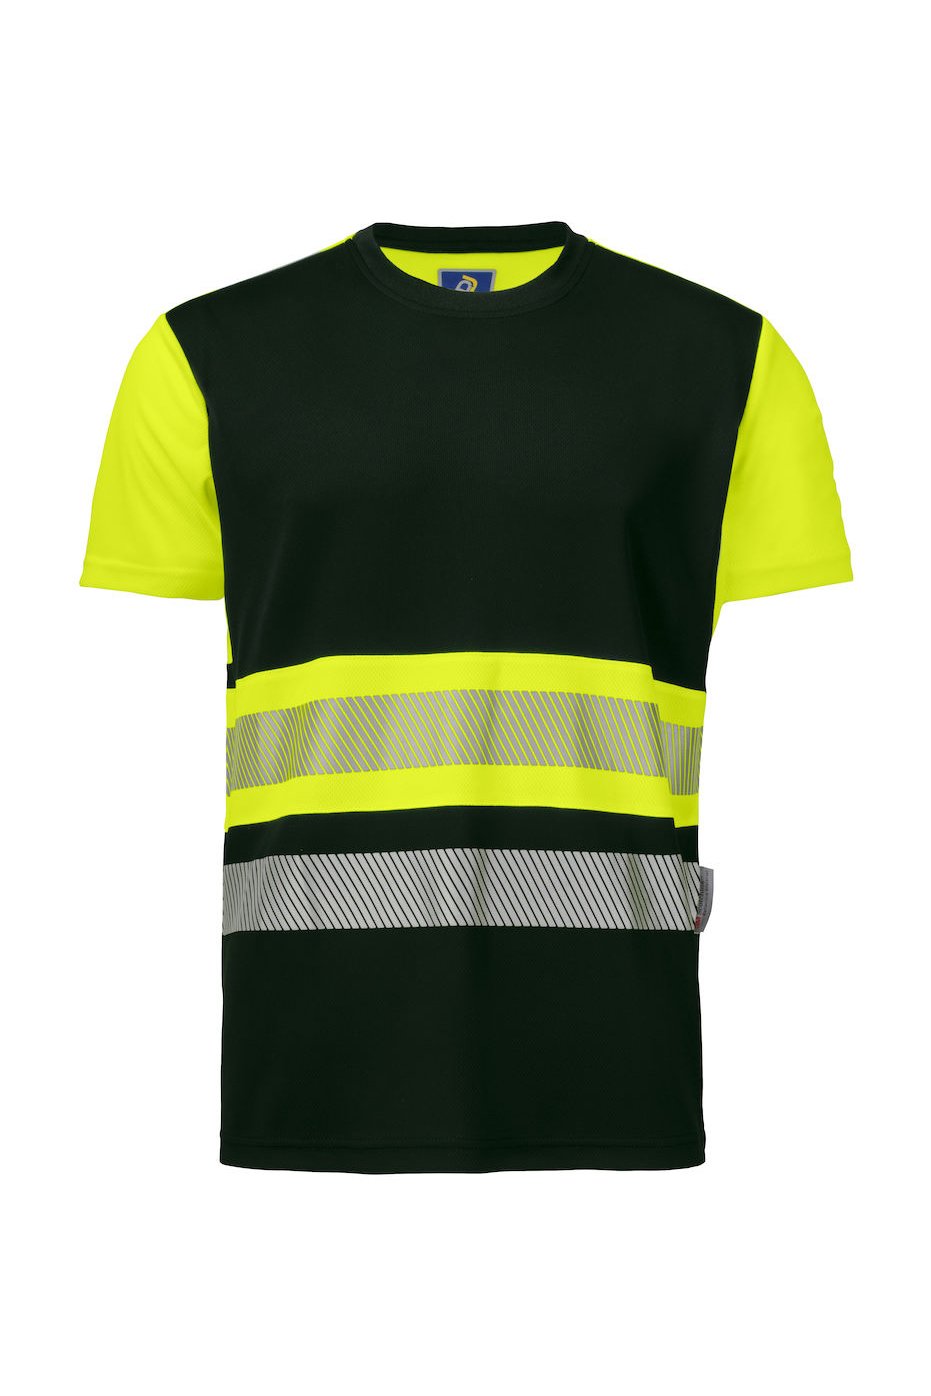 T-Shirt EN ISO 20471 Klasse 1, gelb/schwarz